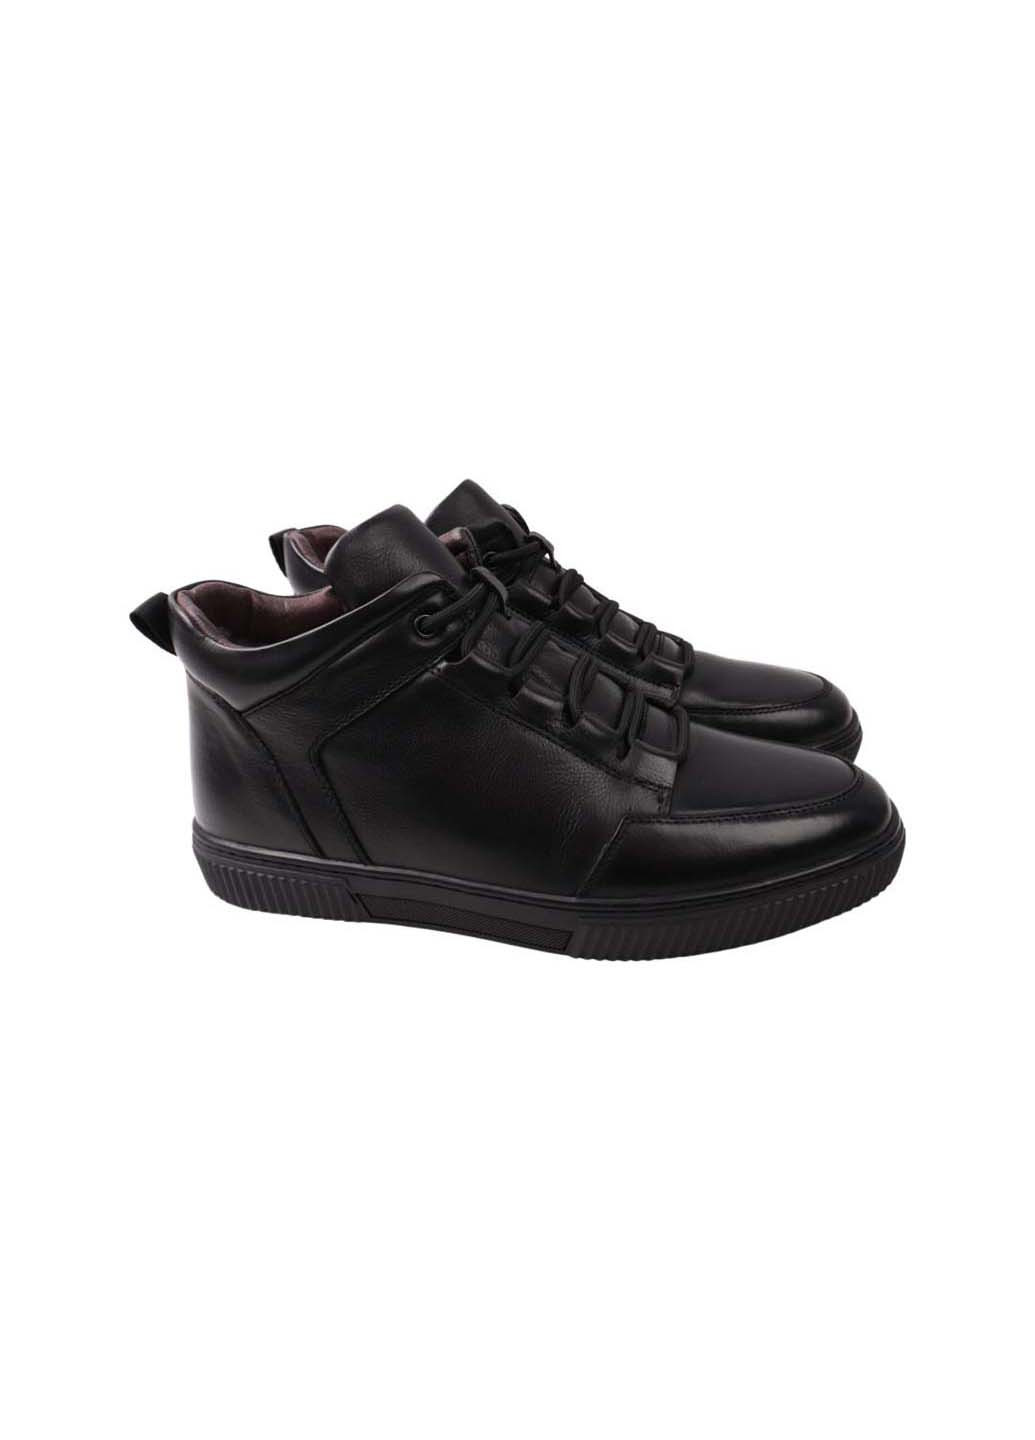 Черные осенние ботинки Anemone